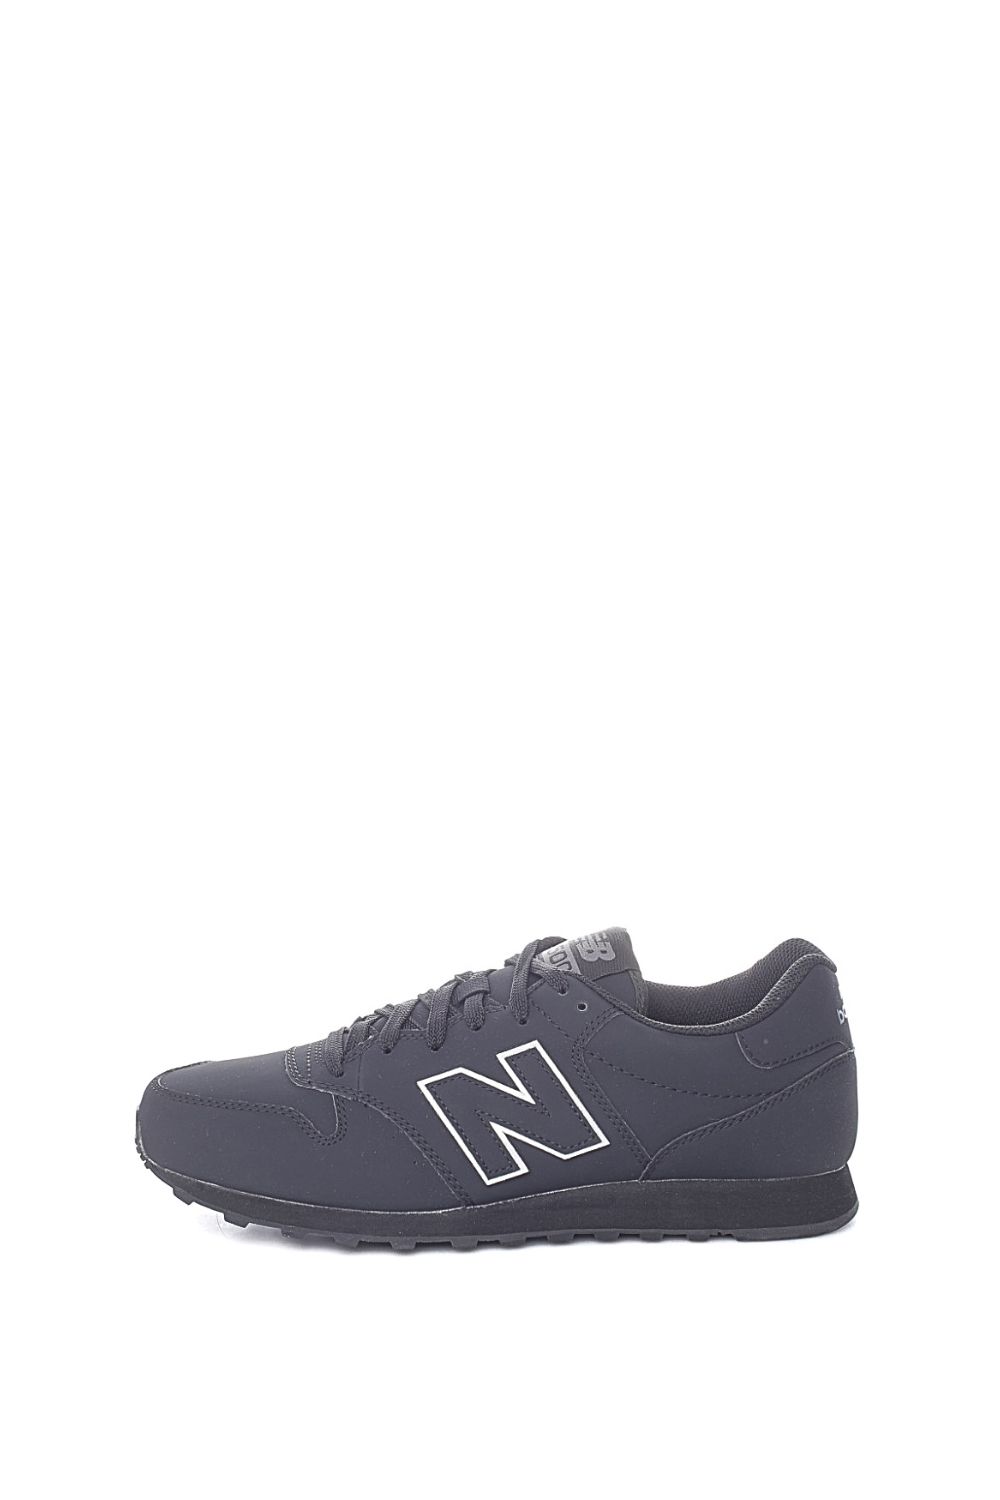 NEW BALANCE - Ανδρικά sneakers NEW BALANCE 500 μαύρα Ανδρικά/Παπούτσια/Sneakers